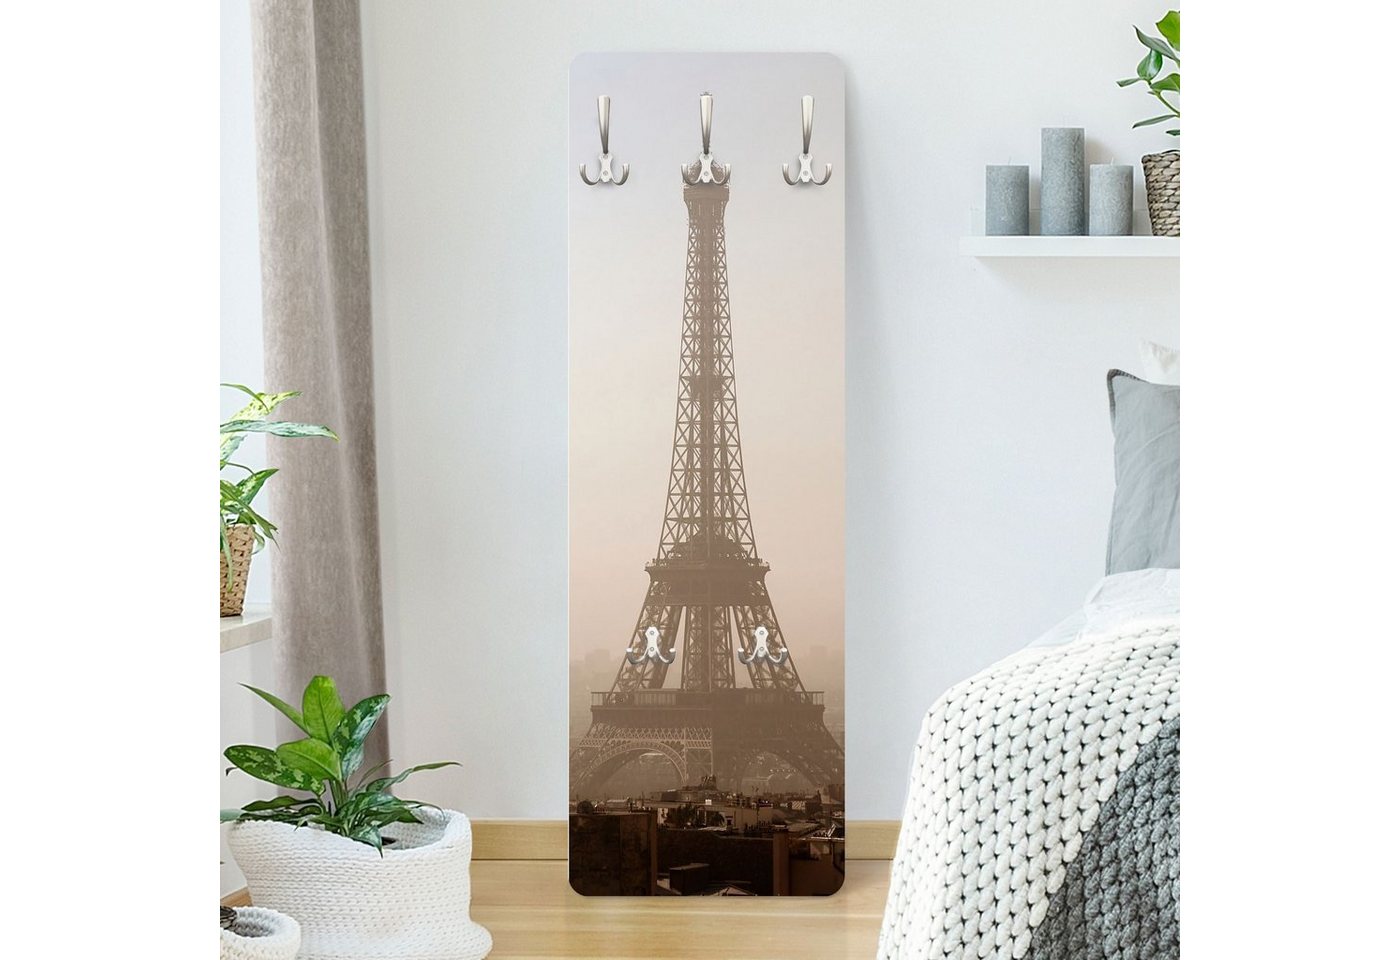 Bilderdepot24 Garderobenpaneel beige Retro Vintage Städte Skyline Tour Eiffel Design (ausgefallenes Flur Wandpaneel mit Garderobenhaken Kleiderhaken hängend), moderne Wandgarderobe - Flurgarderobe im schmalen Hakenpaneel Design von Bilderdepot24